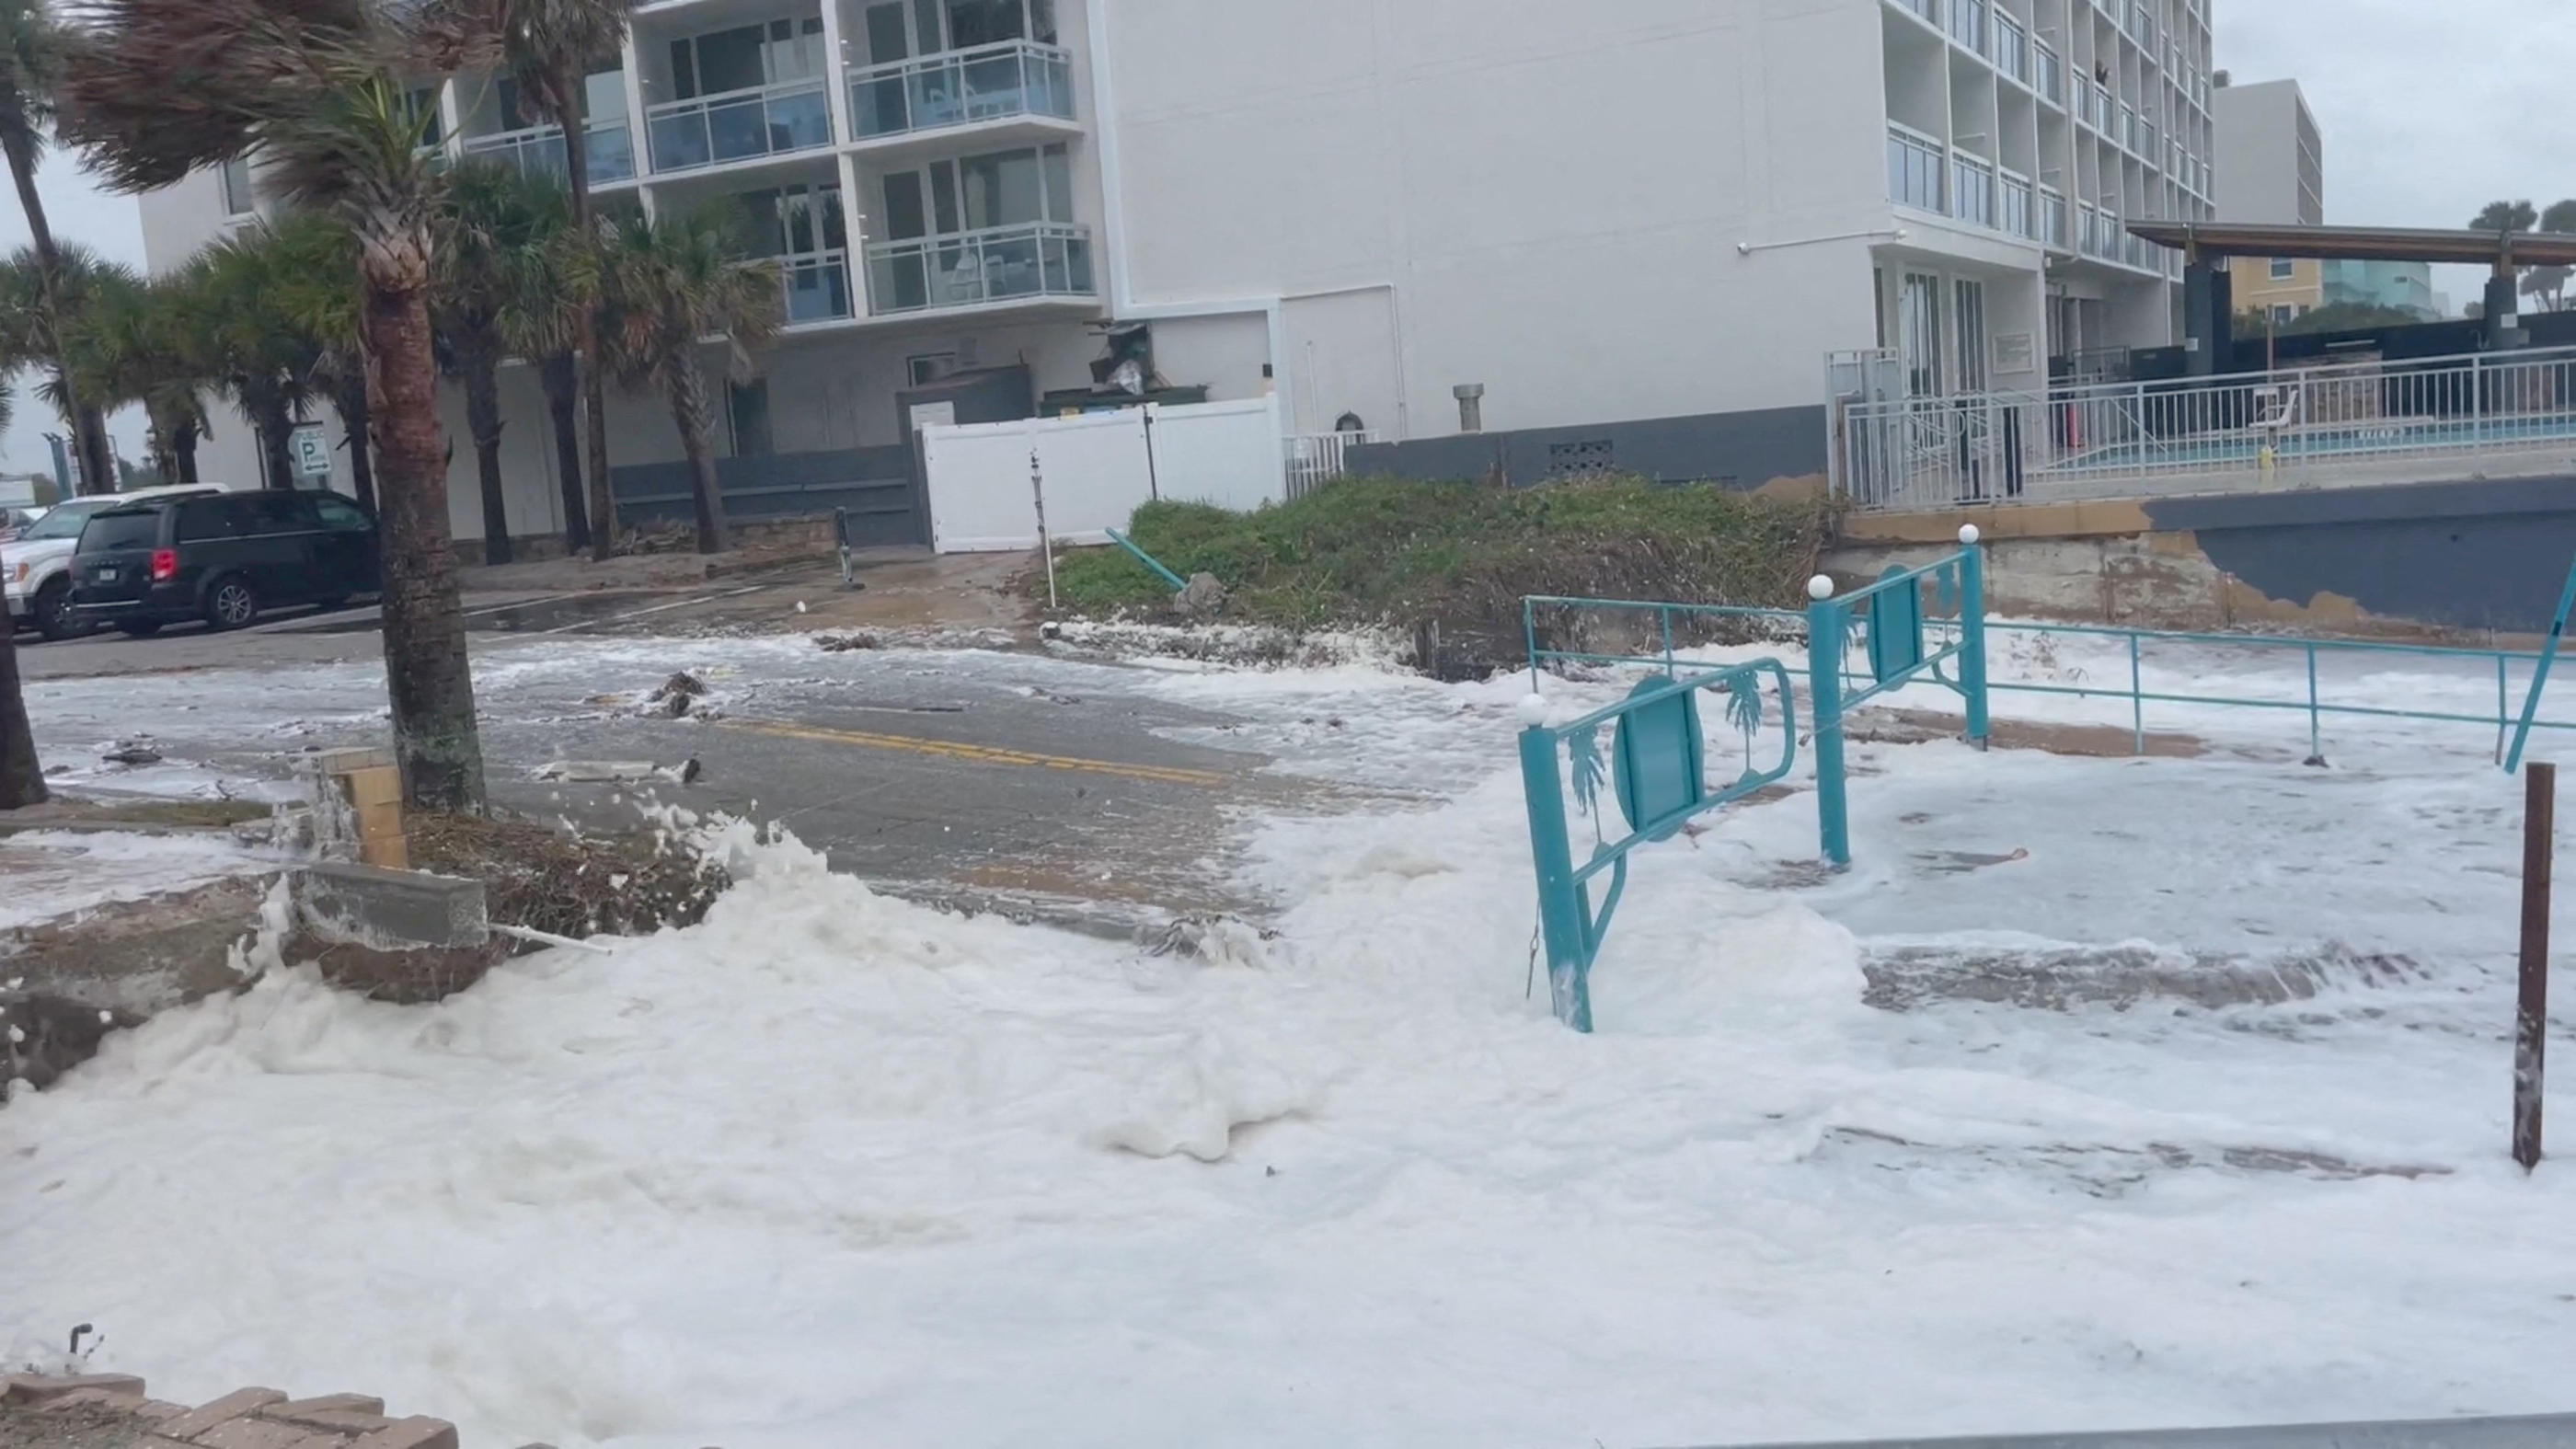 Les premiers vents et vagues ont commencé à déferler sur la Floride. Eric Liebman/ Twitter @eric_liebman/via REUTERS